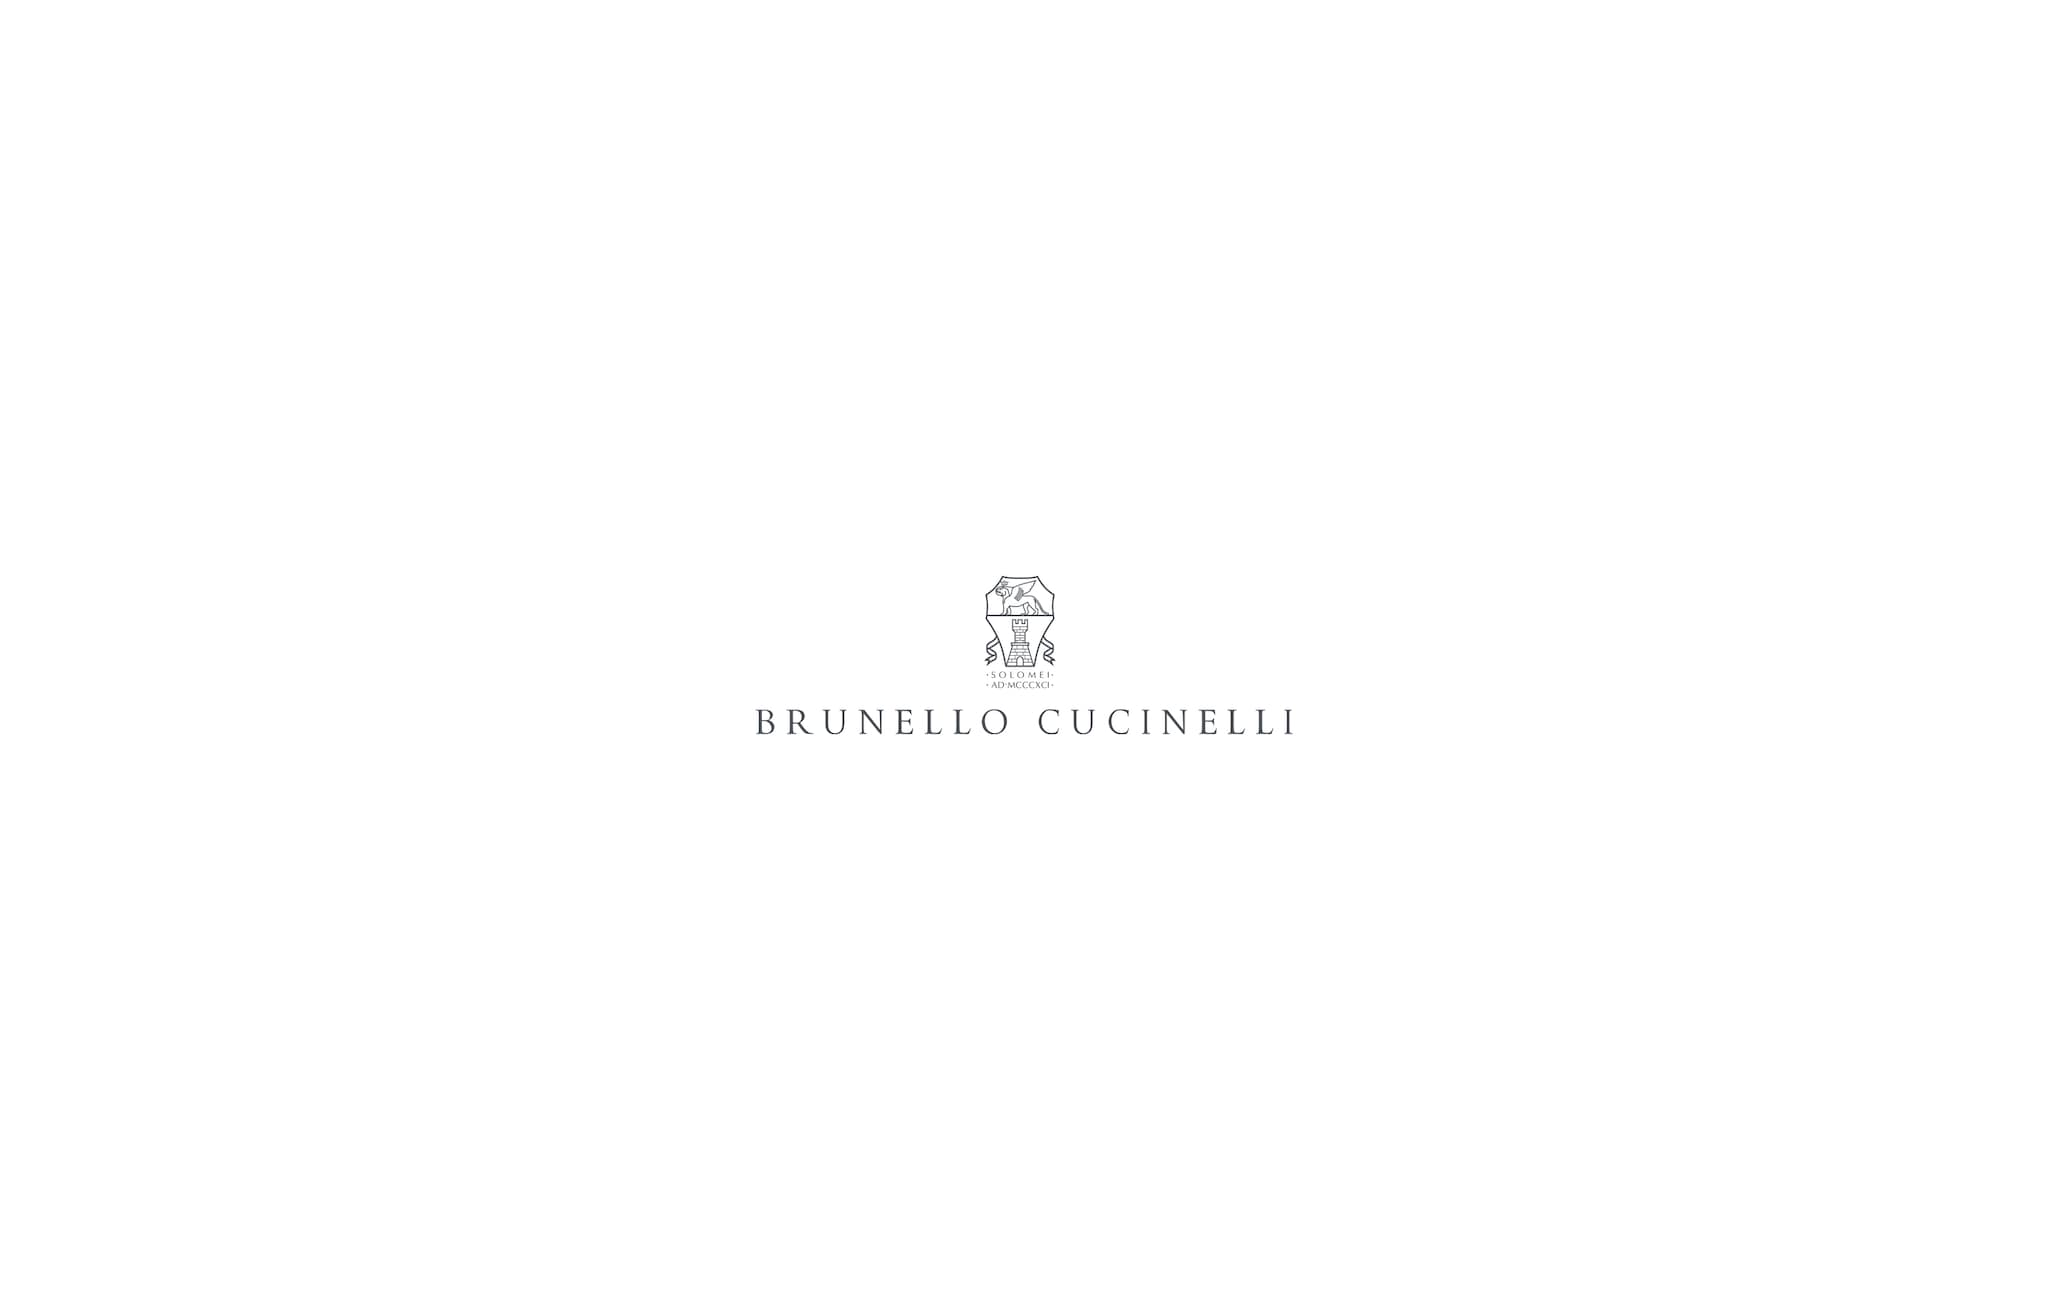  府绸面料衬衫 石灰色 女款 - Brunello Cucinelli 